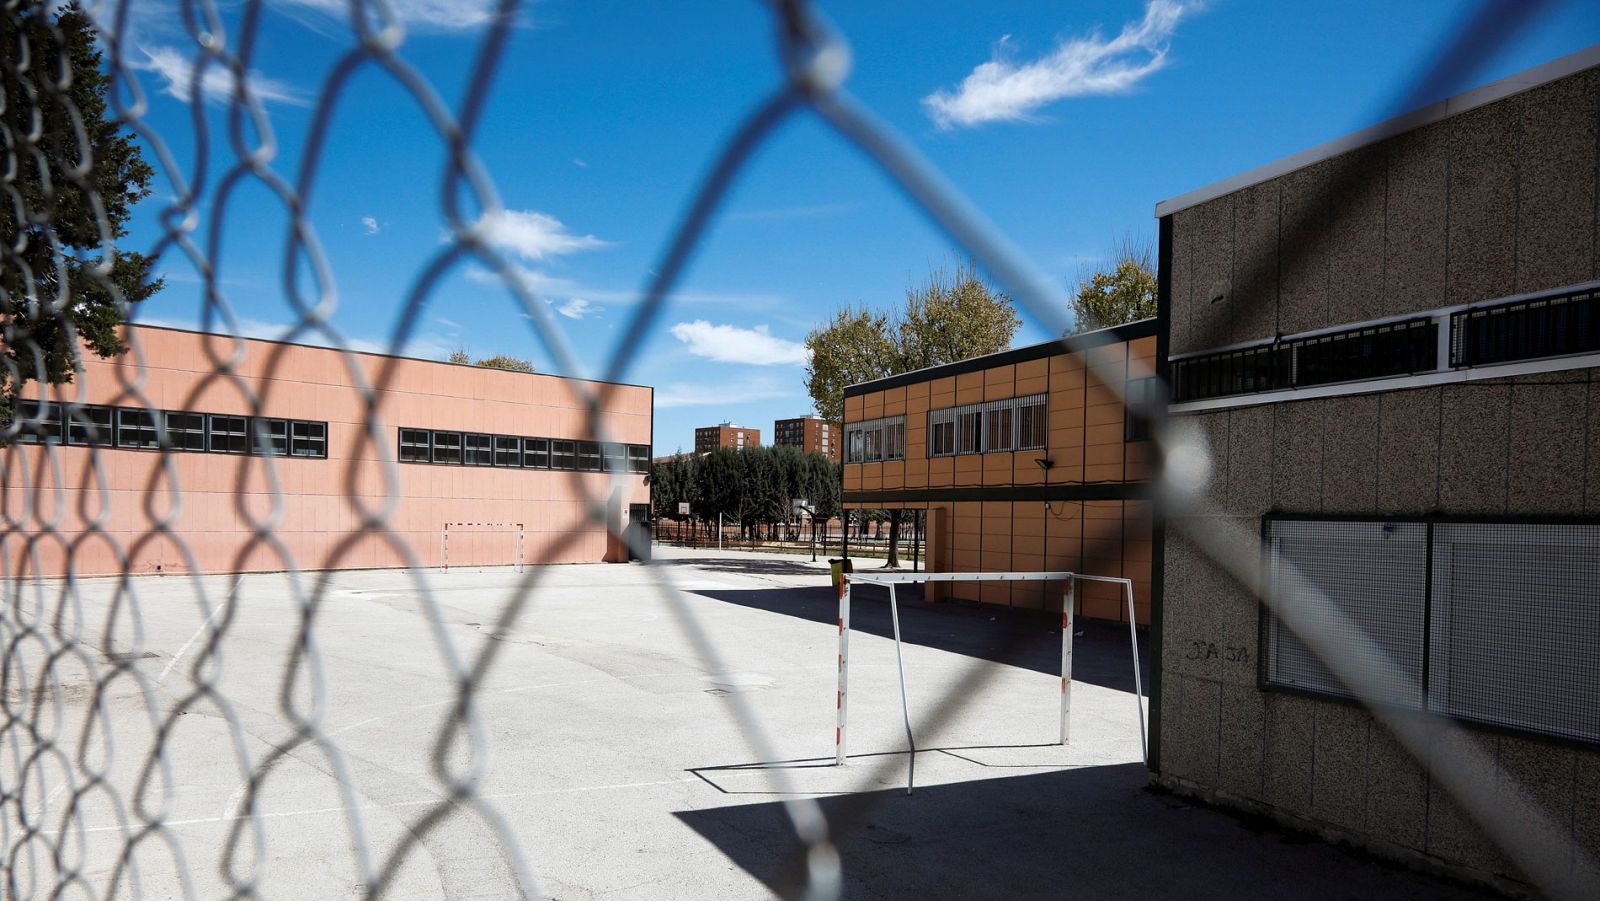 La investigación del suicidio de un menor en Madrid descarta su vinculación con el acoso escolar